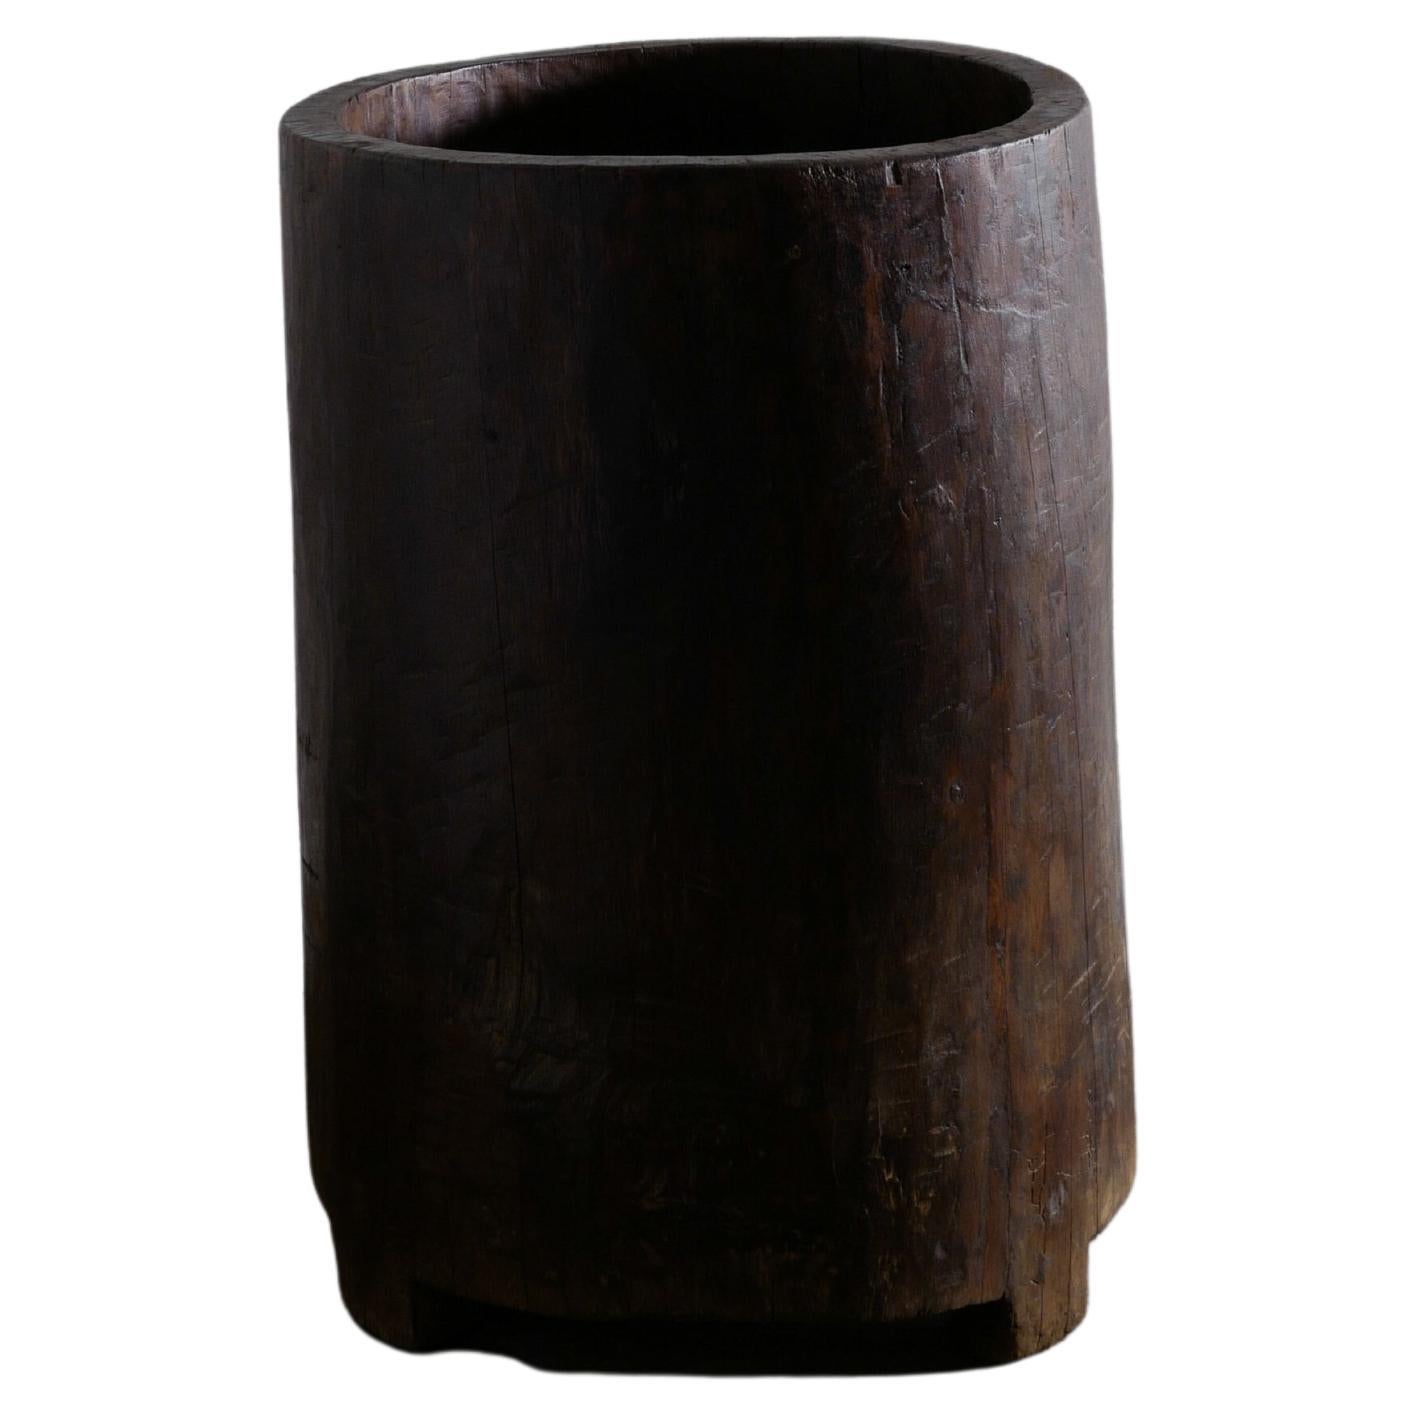 Wooden Teak Naga Pot Barrel Planter in a Wabi Sabi Style, India